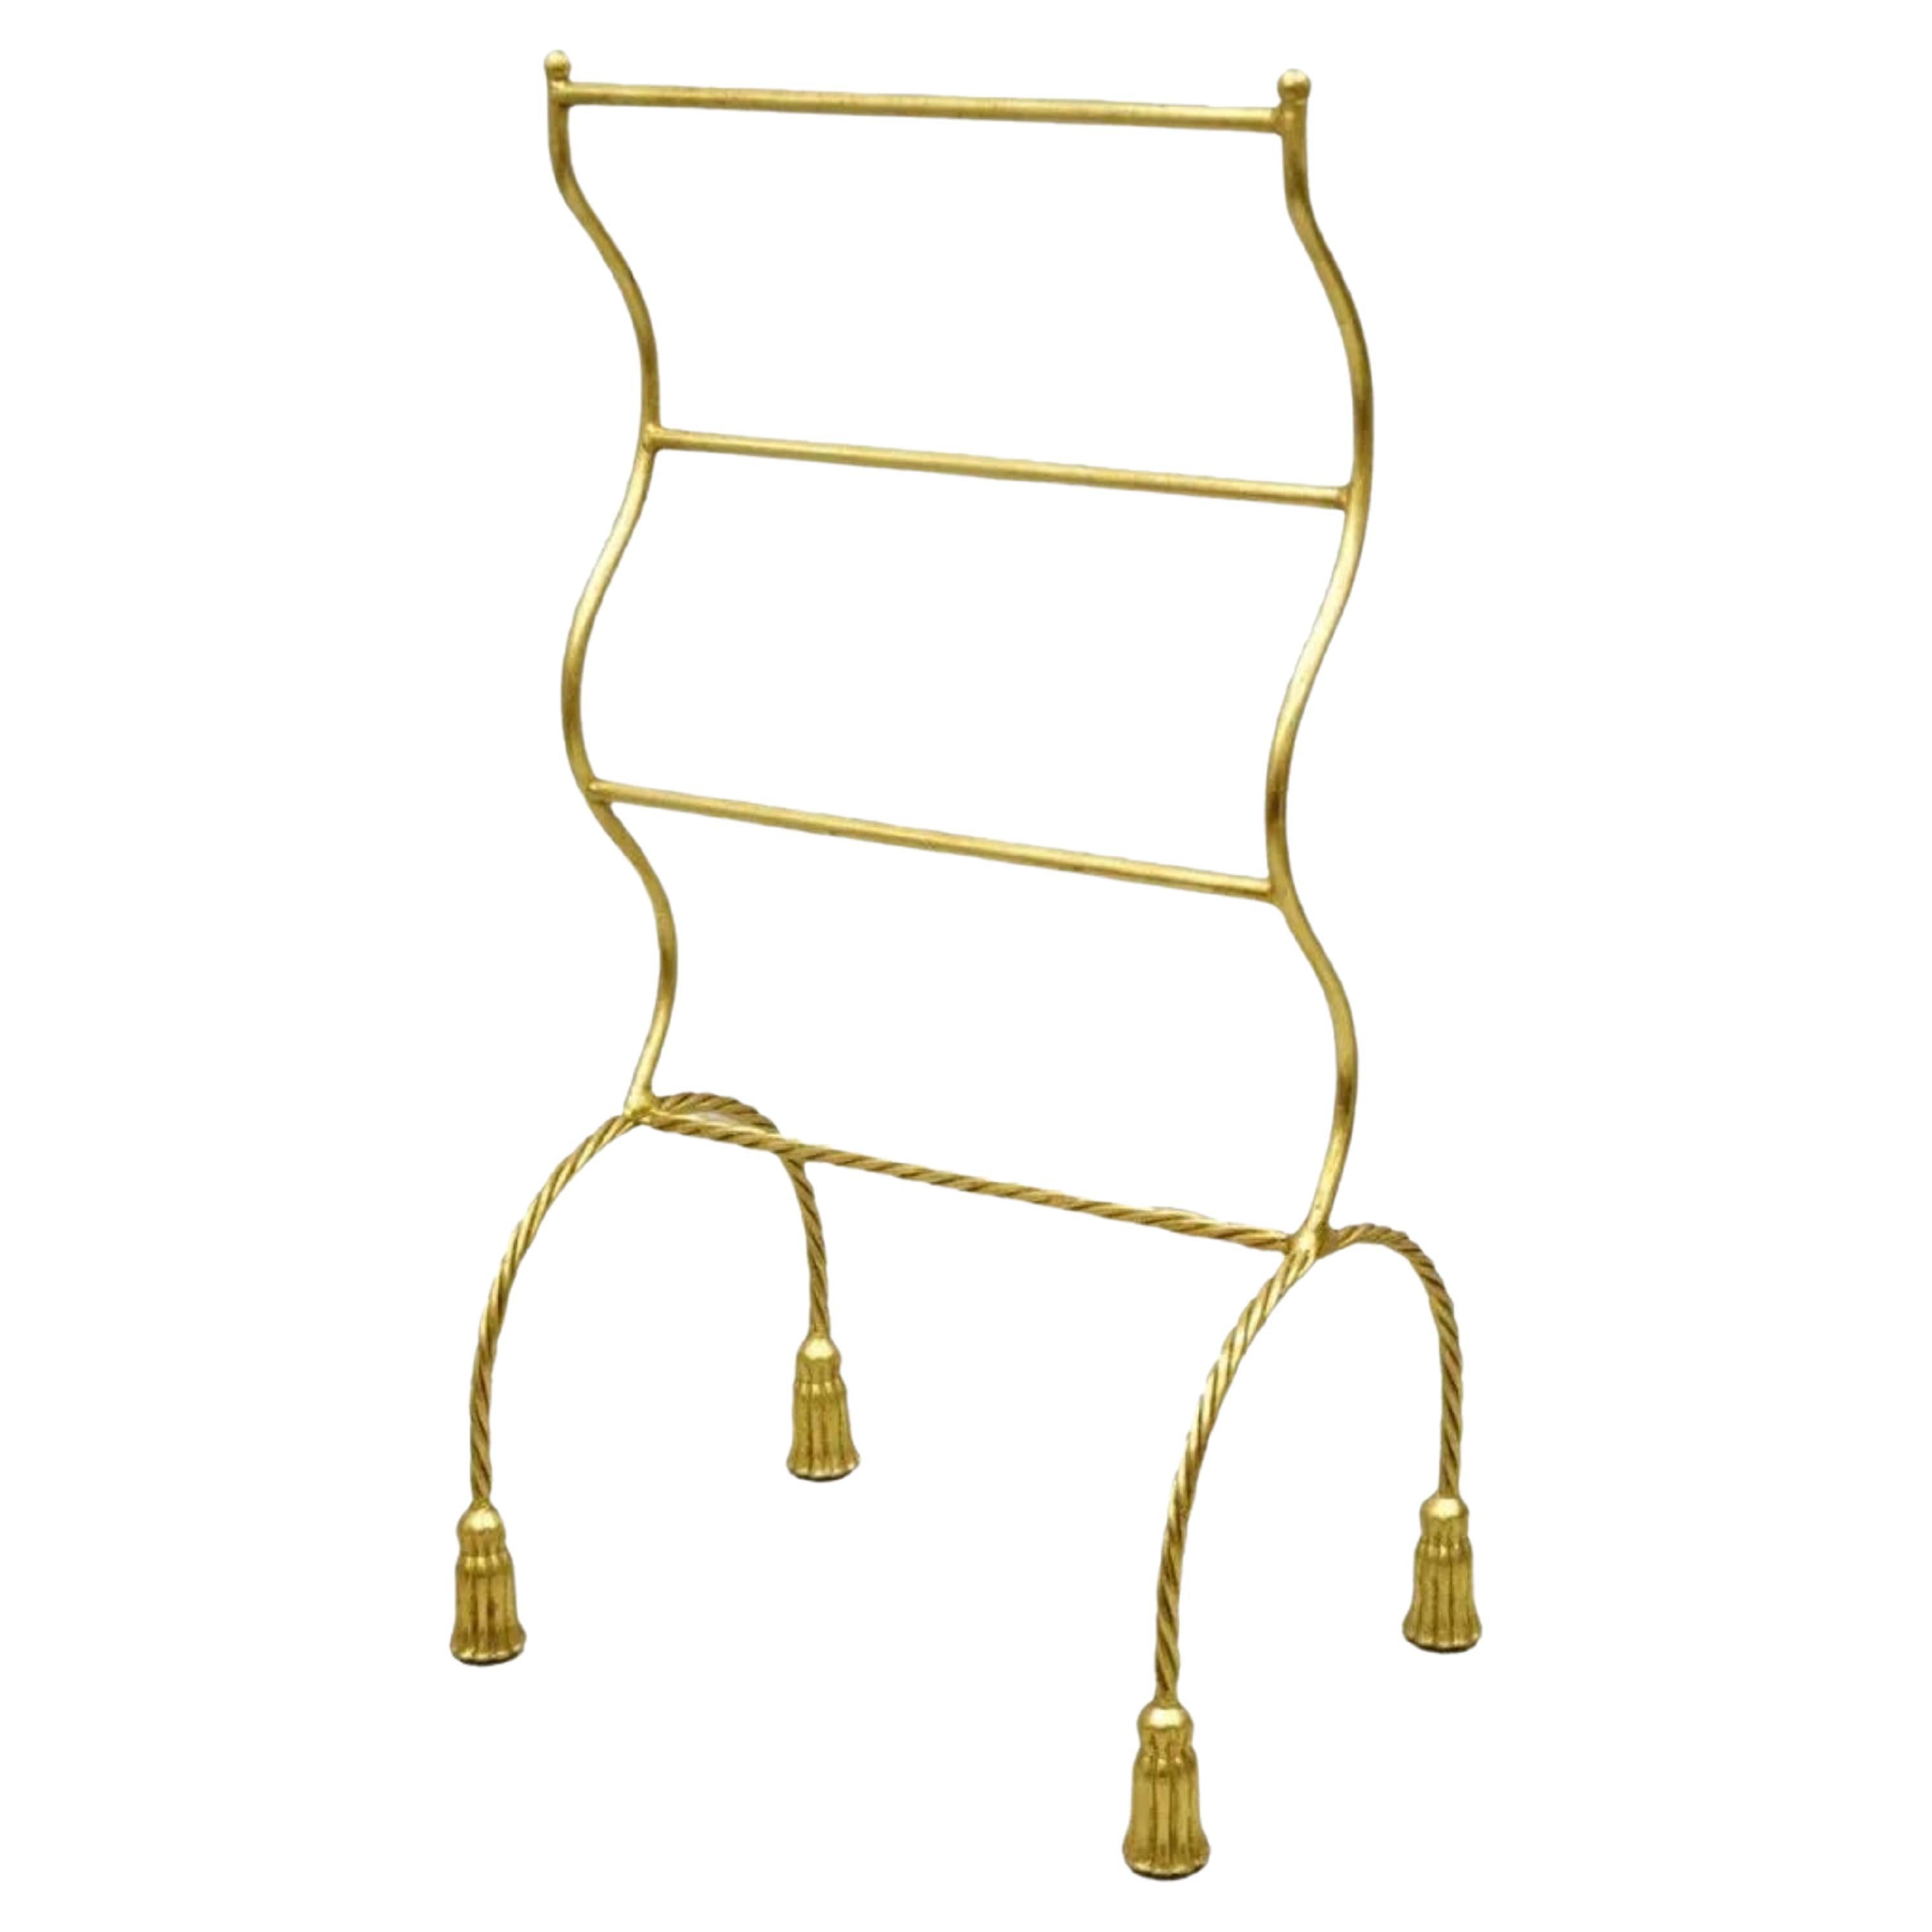 Porte-serviettes italien en métal doré et doré de style Hollywood Regency avec pieds à pompons